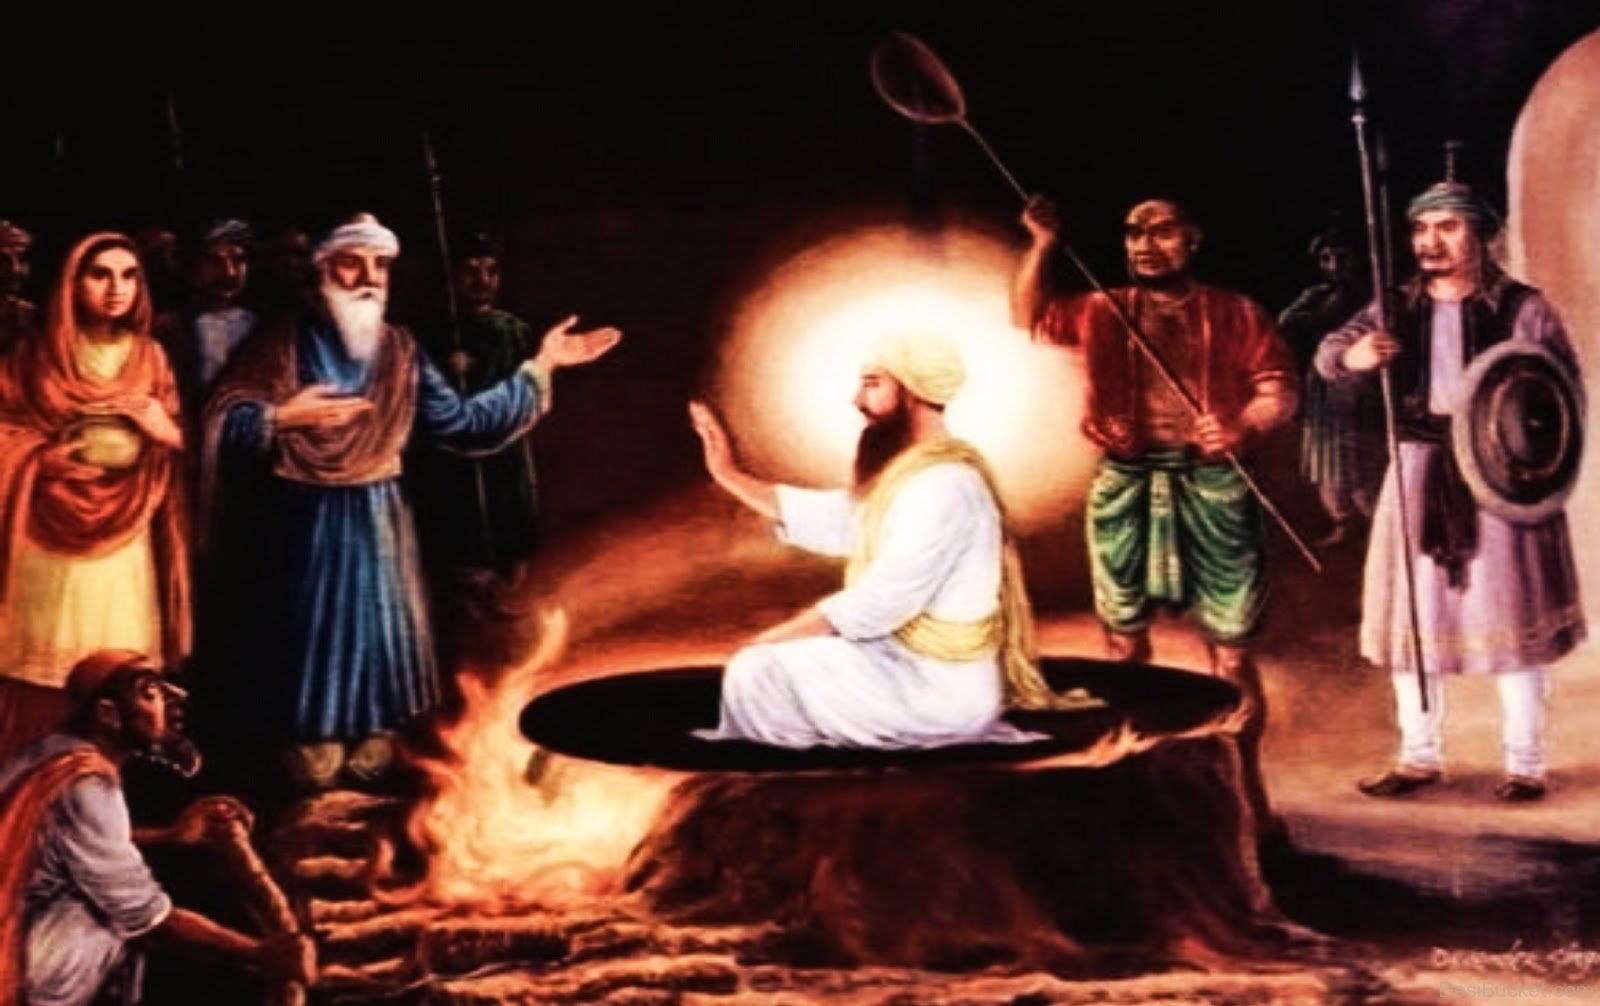 Guru Arjan Dev attained martyrdom for Guru Granth Sahib sanctity